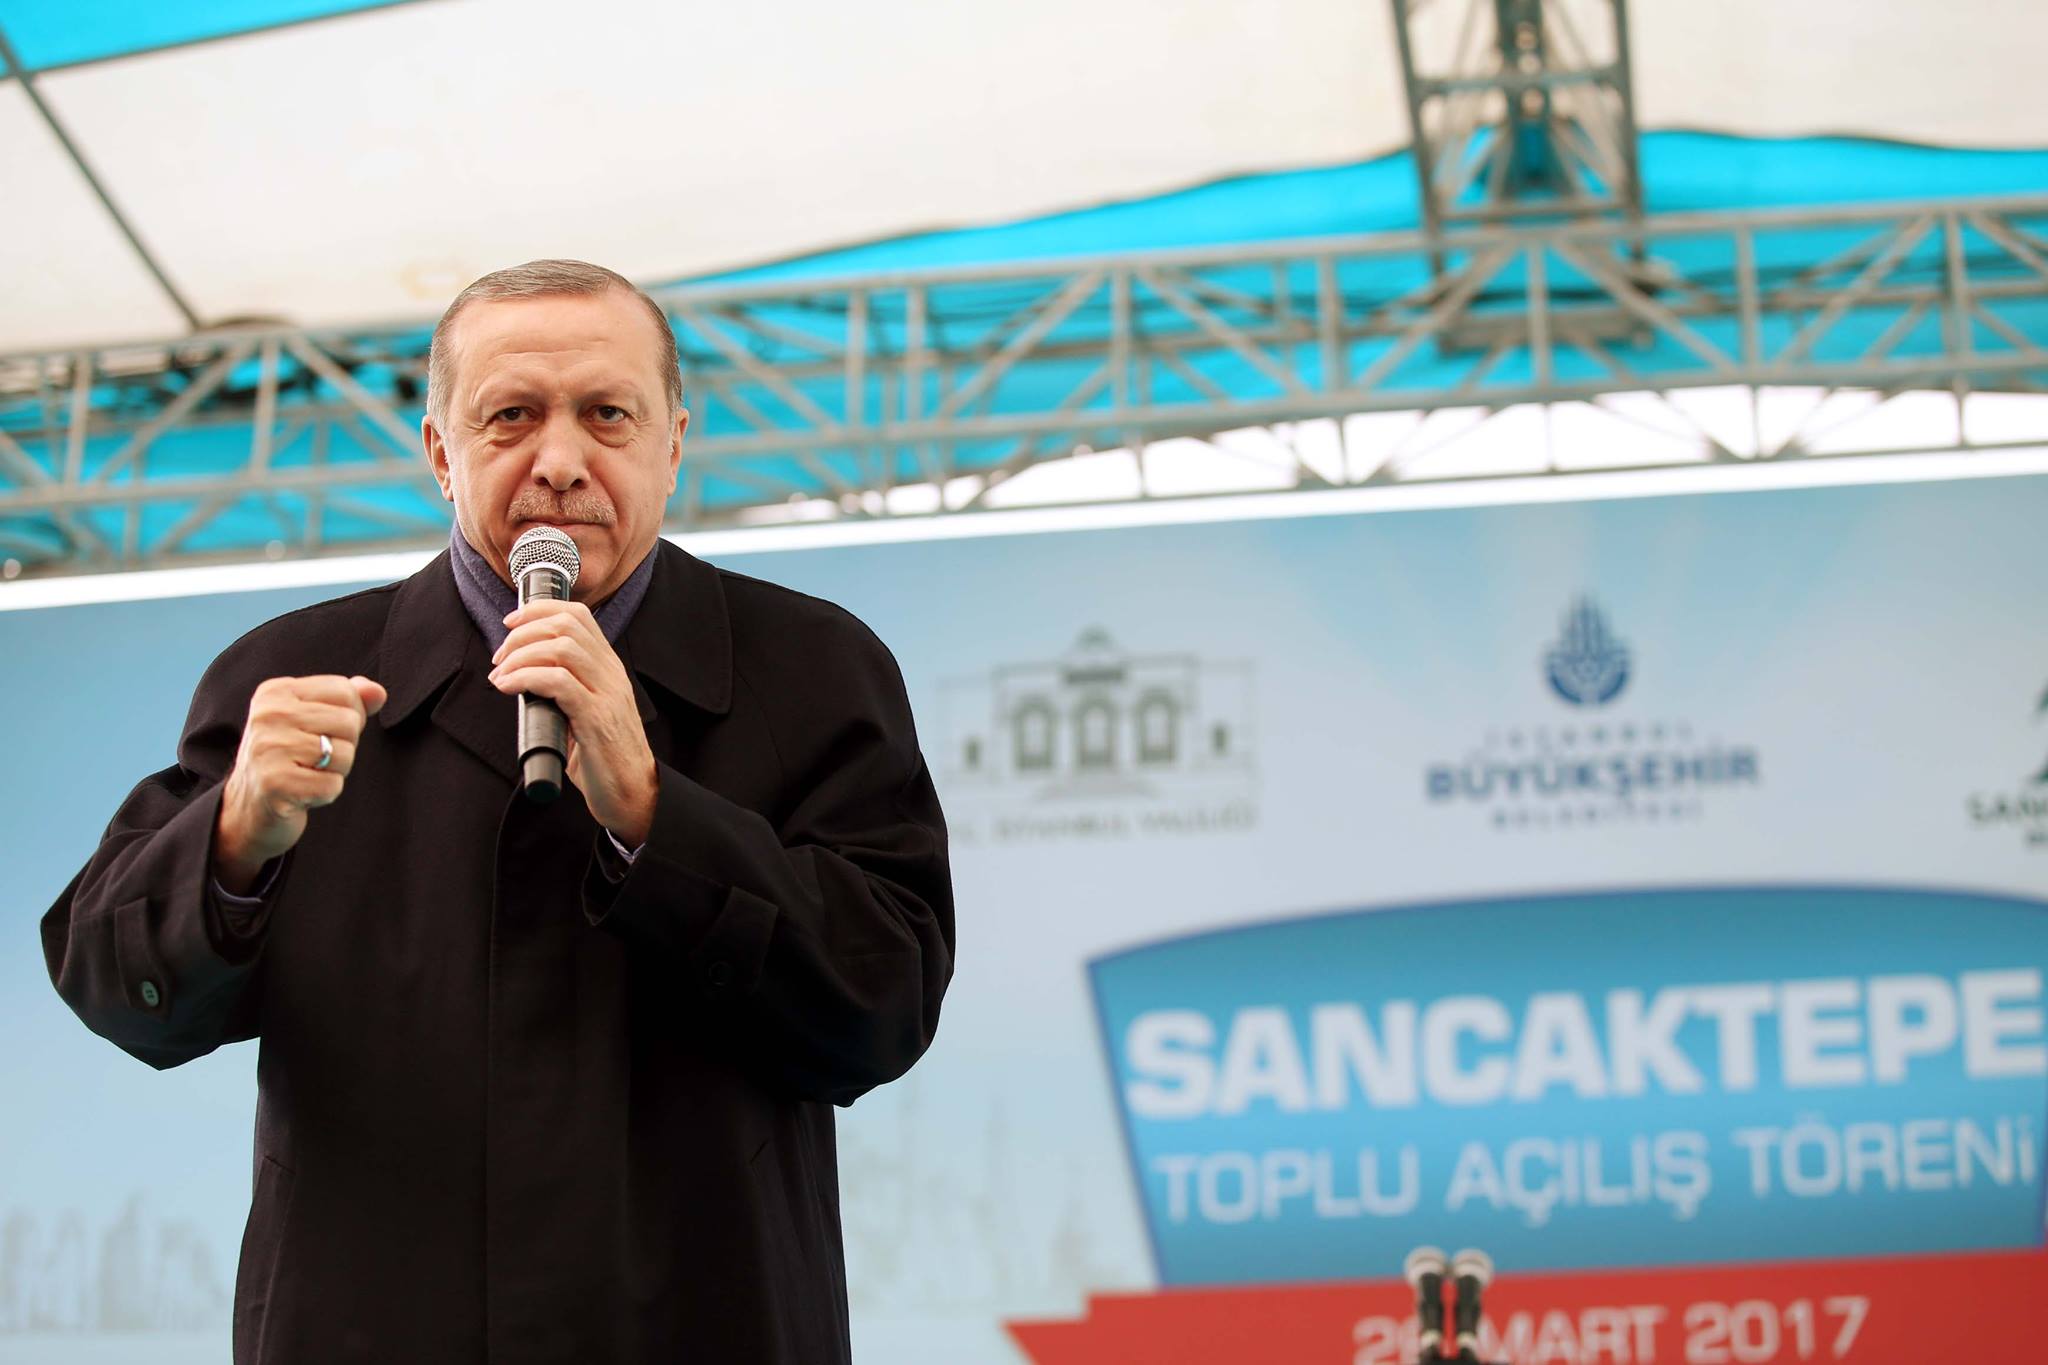 الرئيس أردوغان في كلمة ألقاها بتاريخ 26/3/2017 لدى مشاركته في افتتاح عدد من المشاريع التنموية بمنطقة أسنلر في إسطنبول.